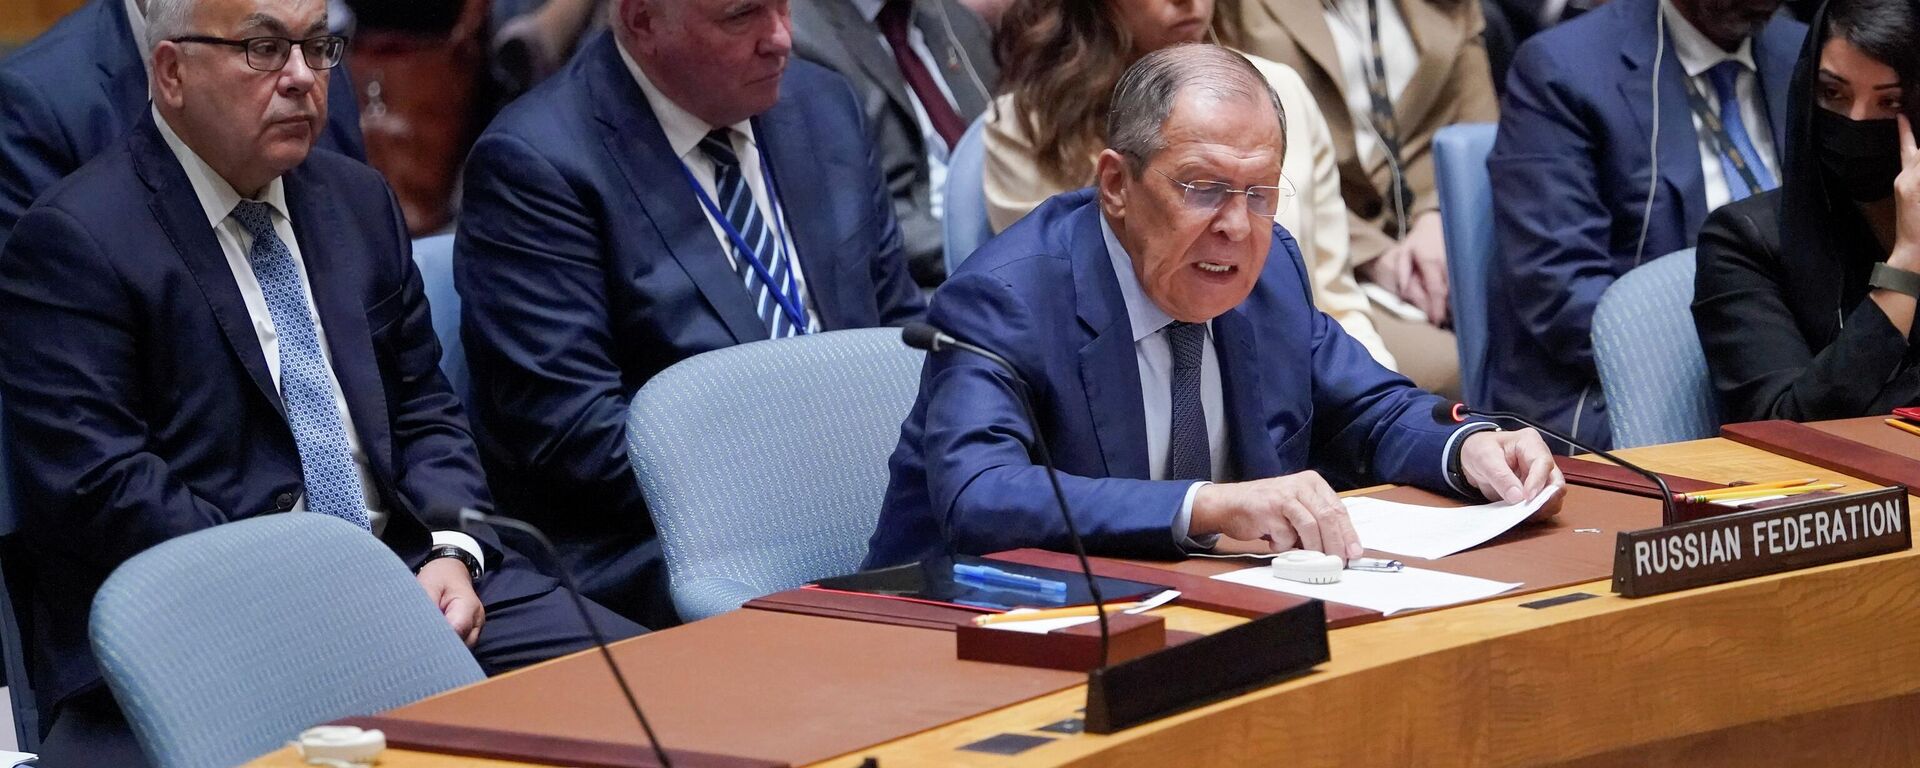 O ministro das Relações Exteriores da Rússia, Sergei Lavrov, fala durante uma reunião de alto nível do Conselho de Segurança sobre a situação na Ucrânia, em 22 de setembro de 2022 (foto de arquivo) - Sputnik Brasil, 1920, 17.02.2023